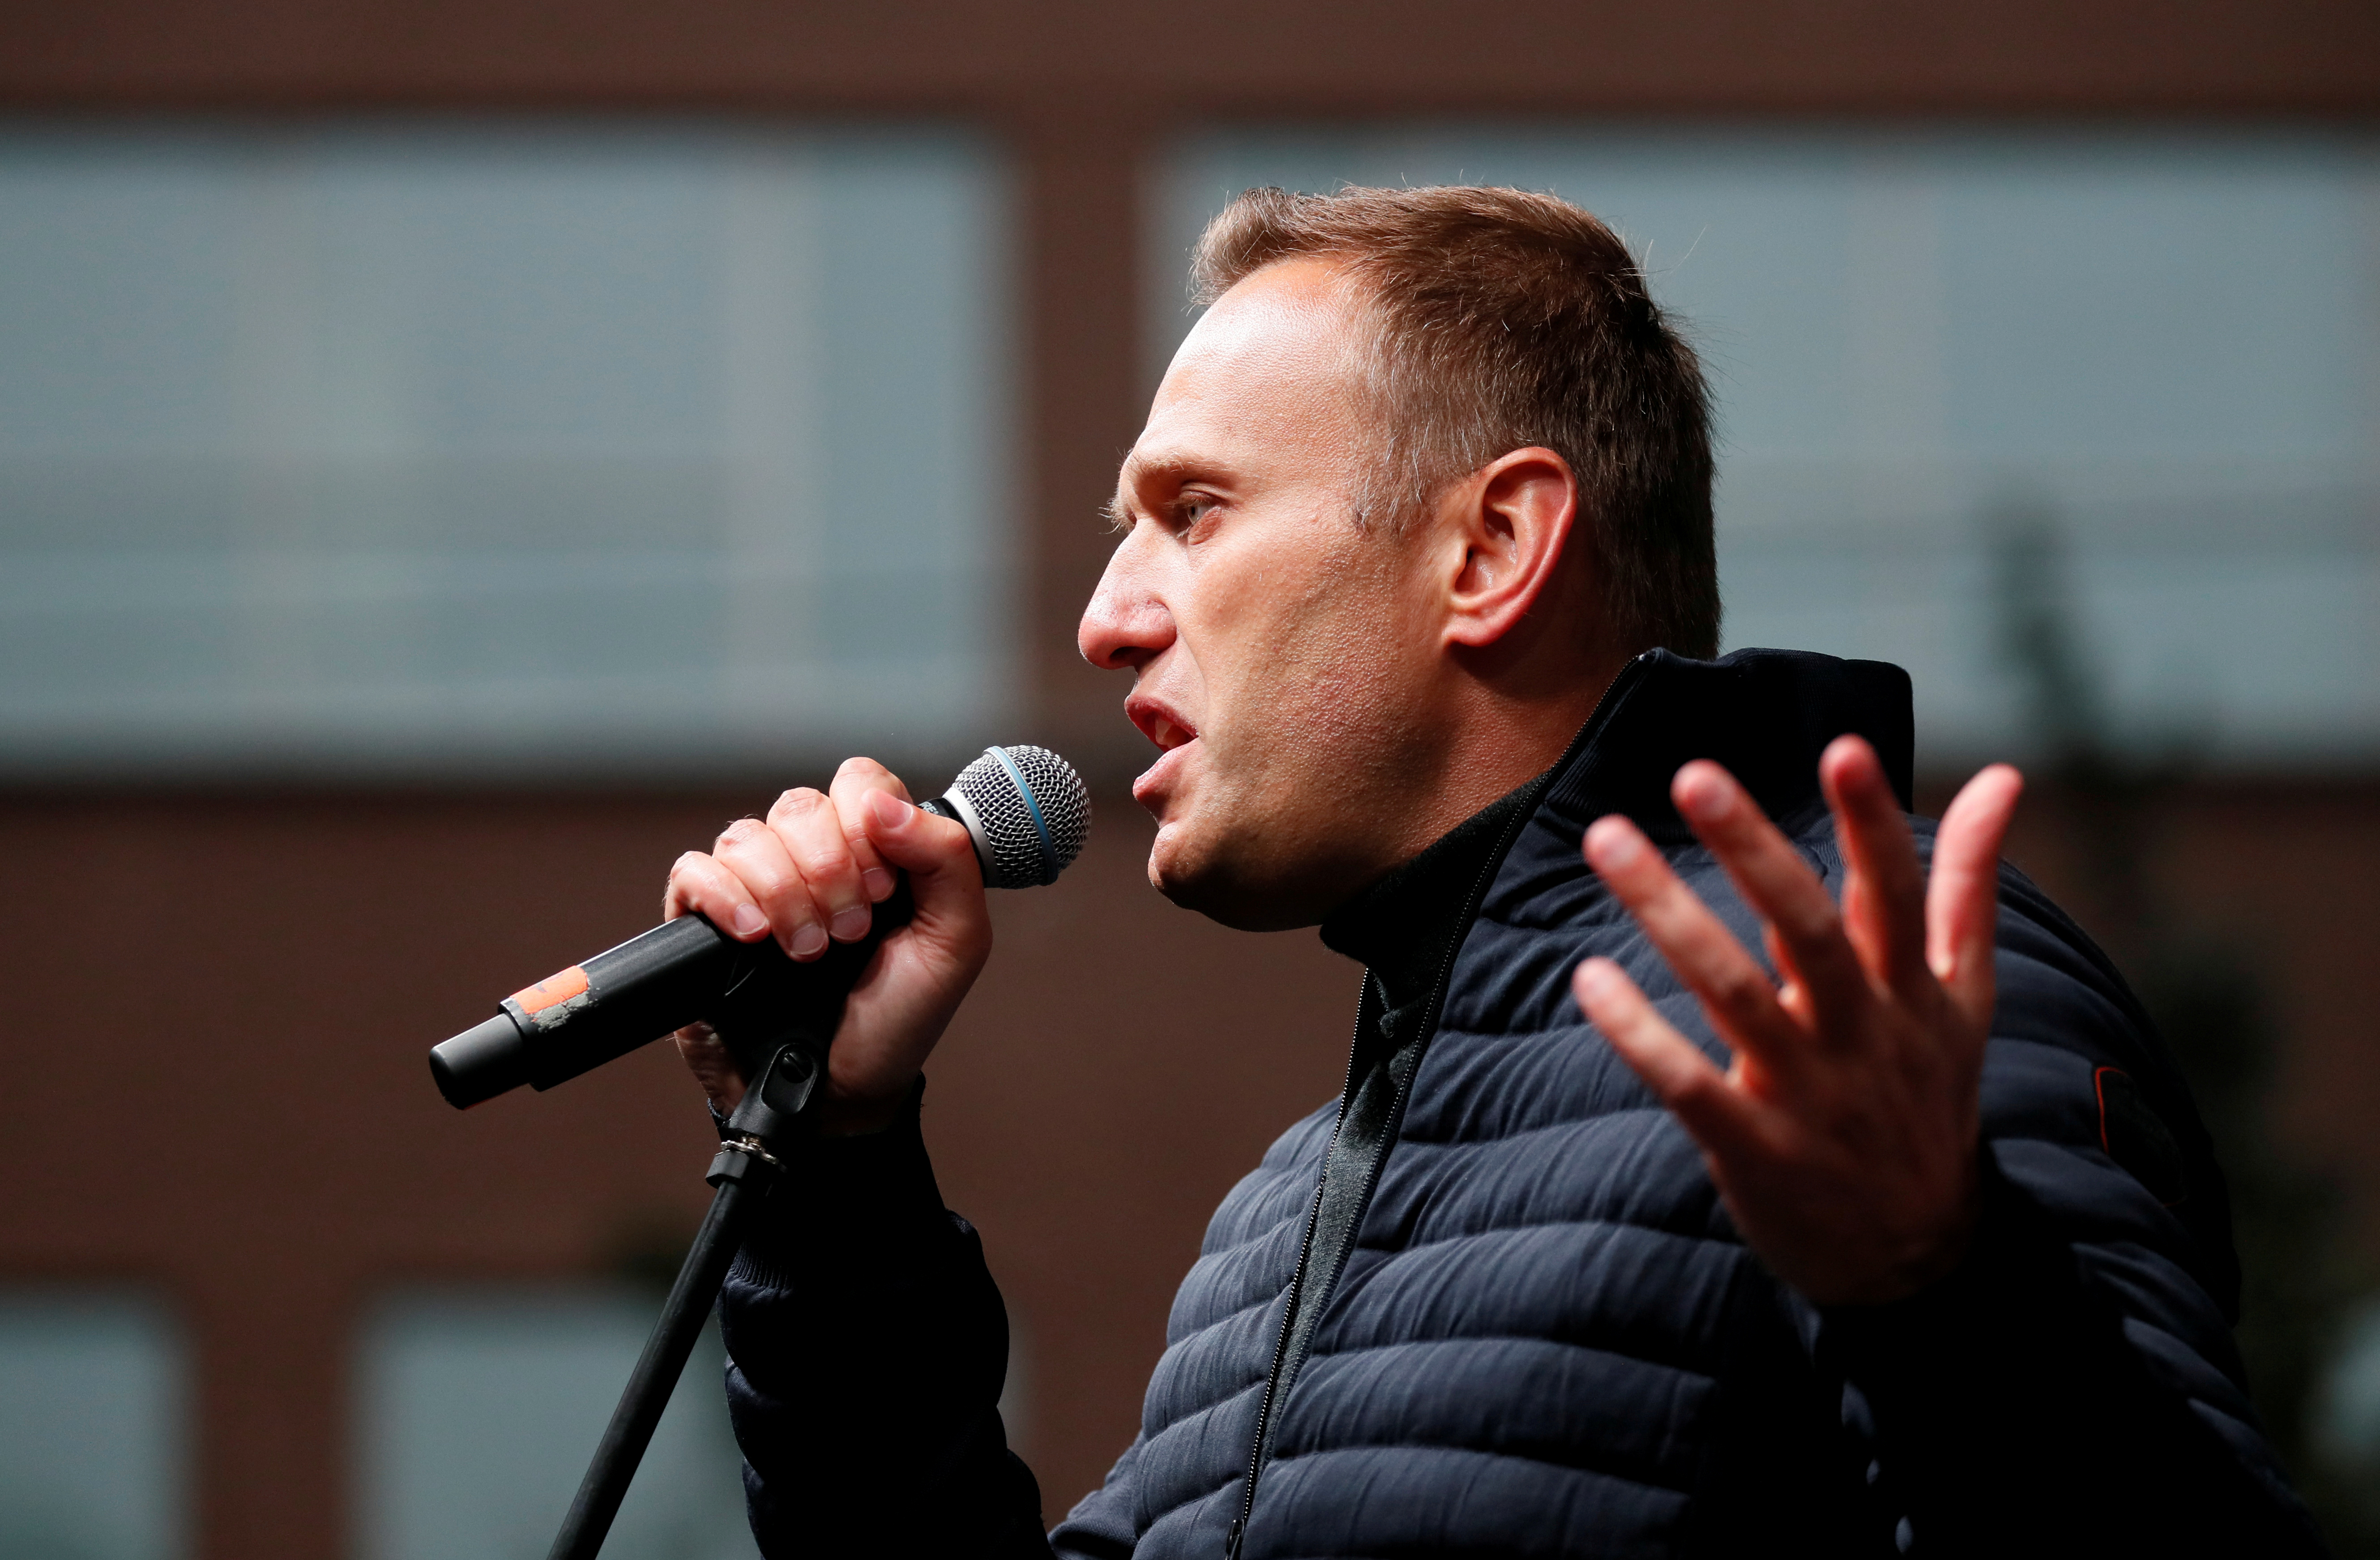 Alemania considera “bastante probable” que el opositor ruso Navalni haya sido envenenado